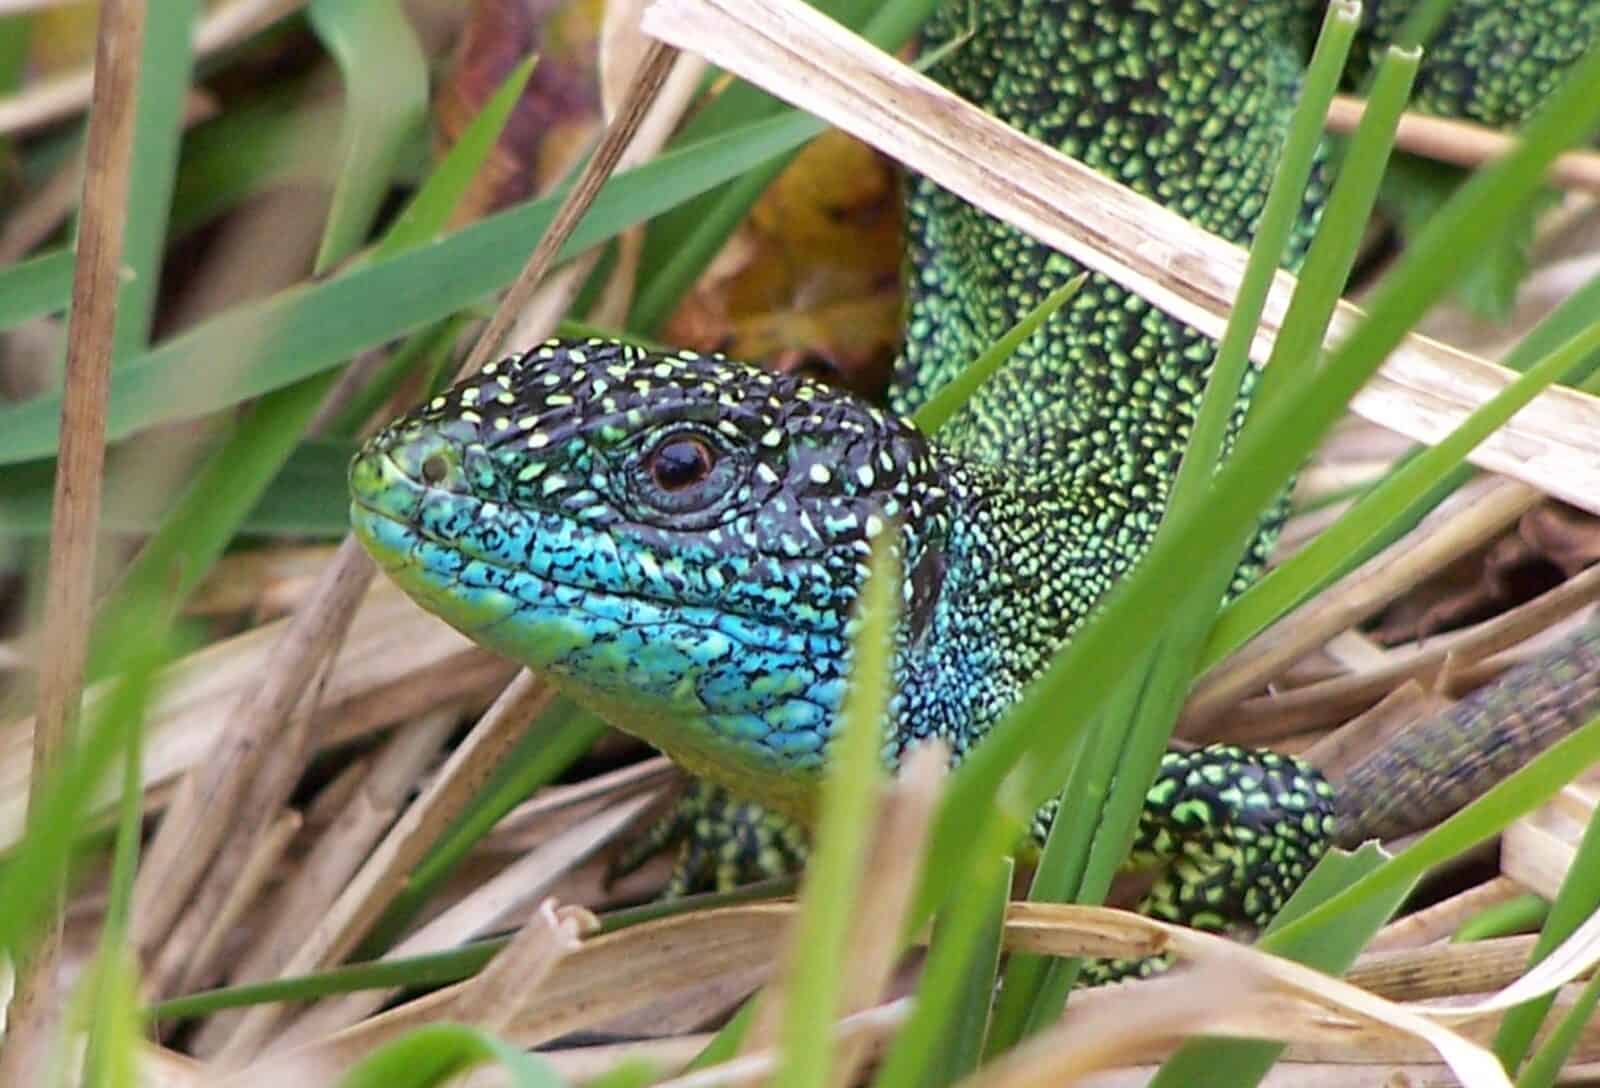 Green lizard in grass